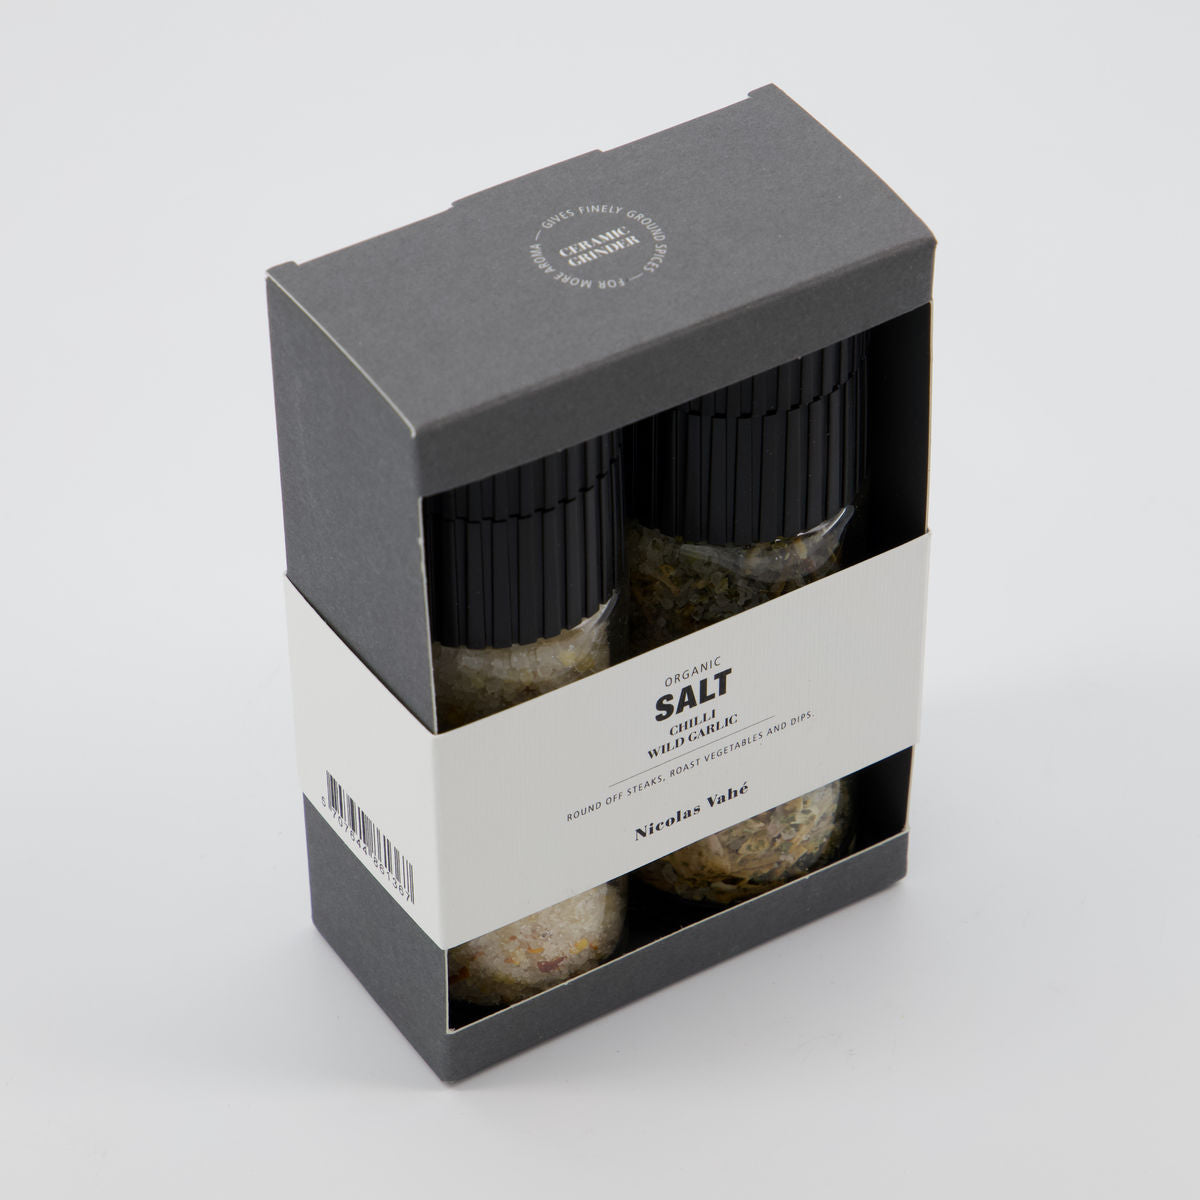 Geschenkbox, Nicolas Vahé Organic Chilli salt & Wild garlic